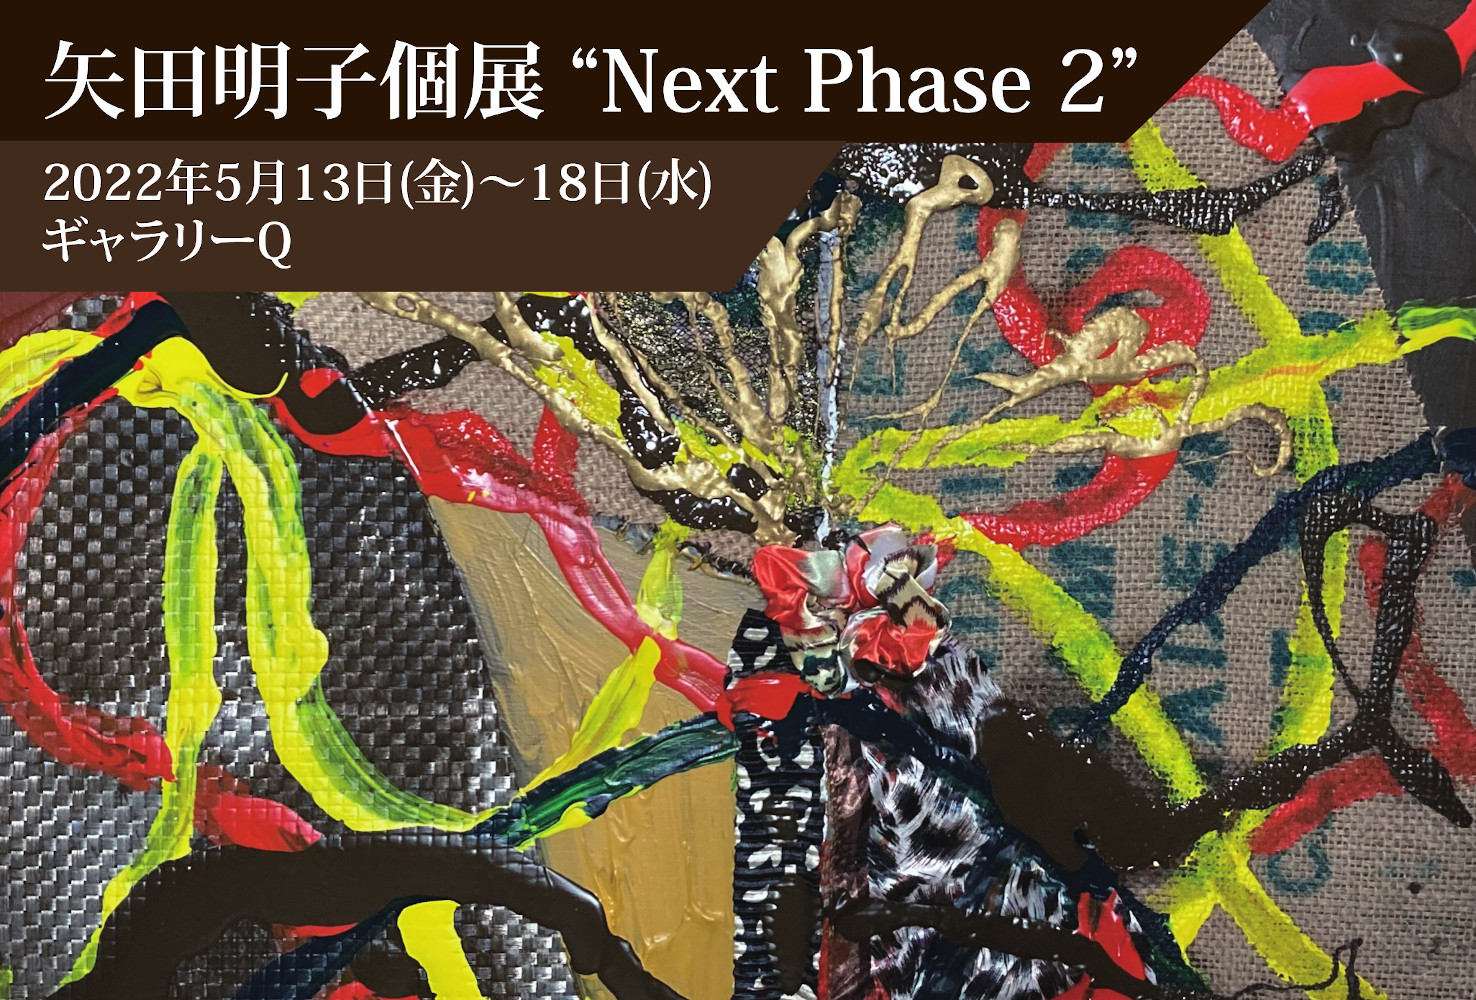 矢田明子個展“Next Phase 2”